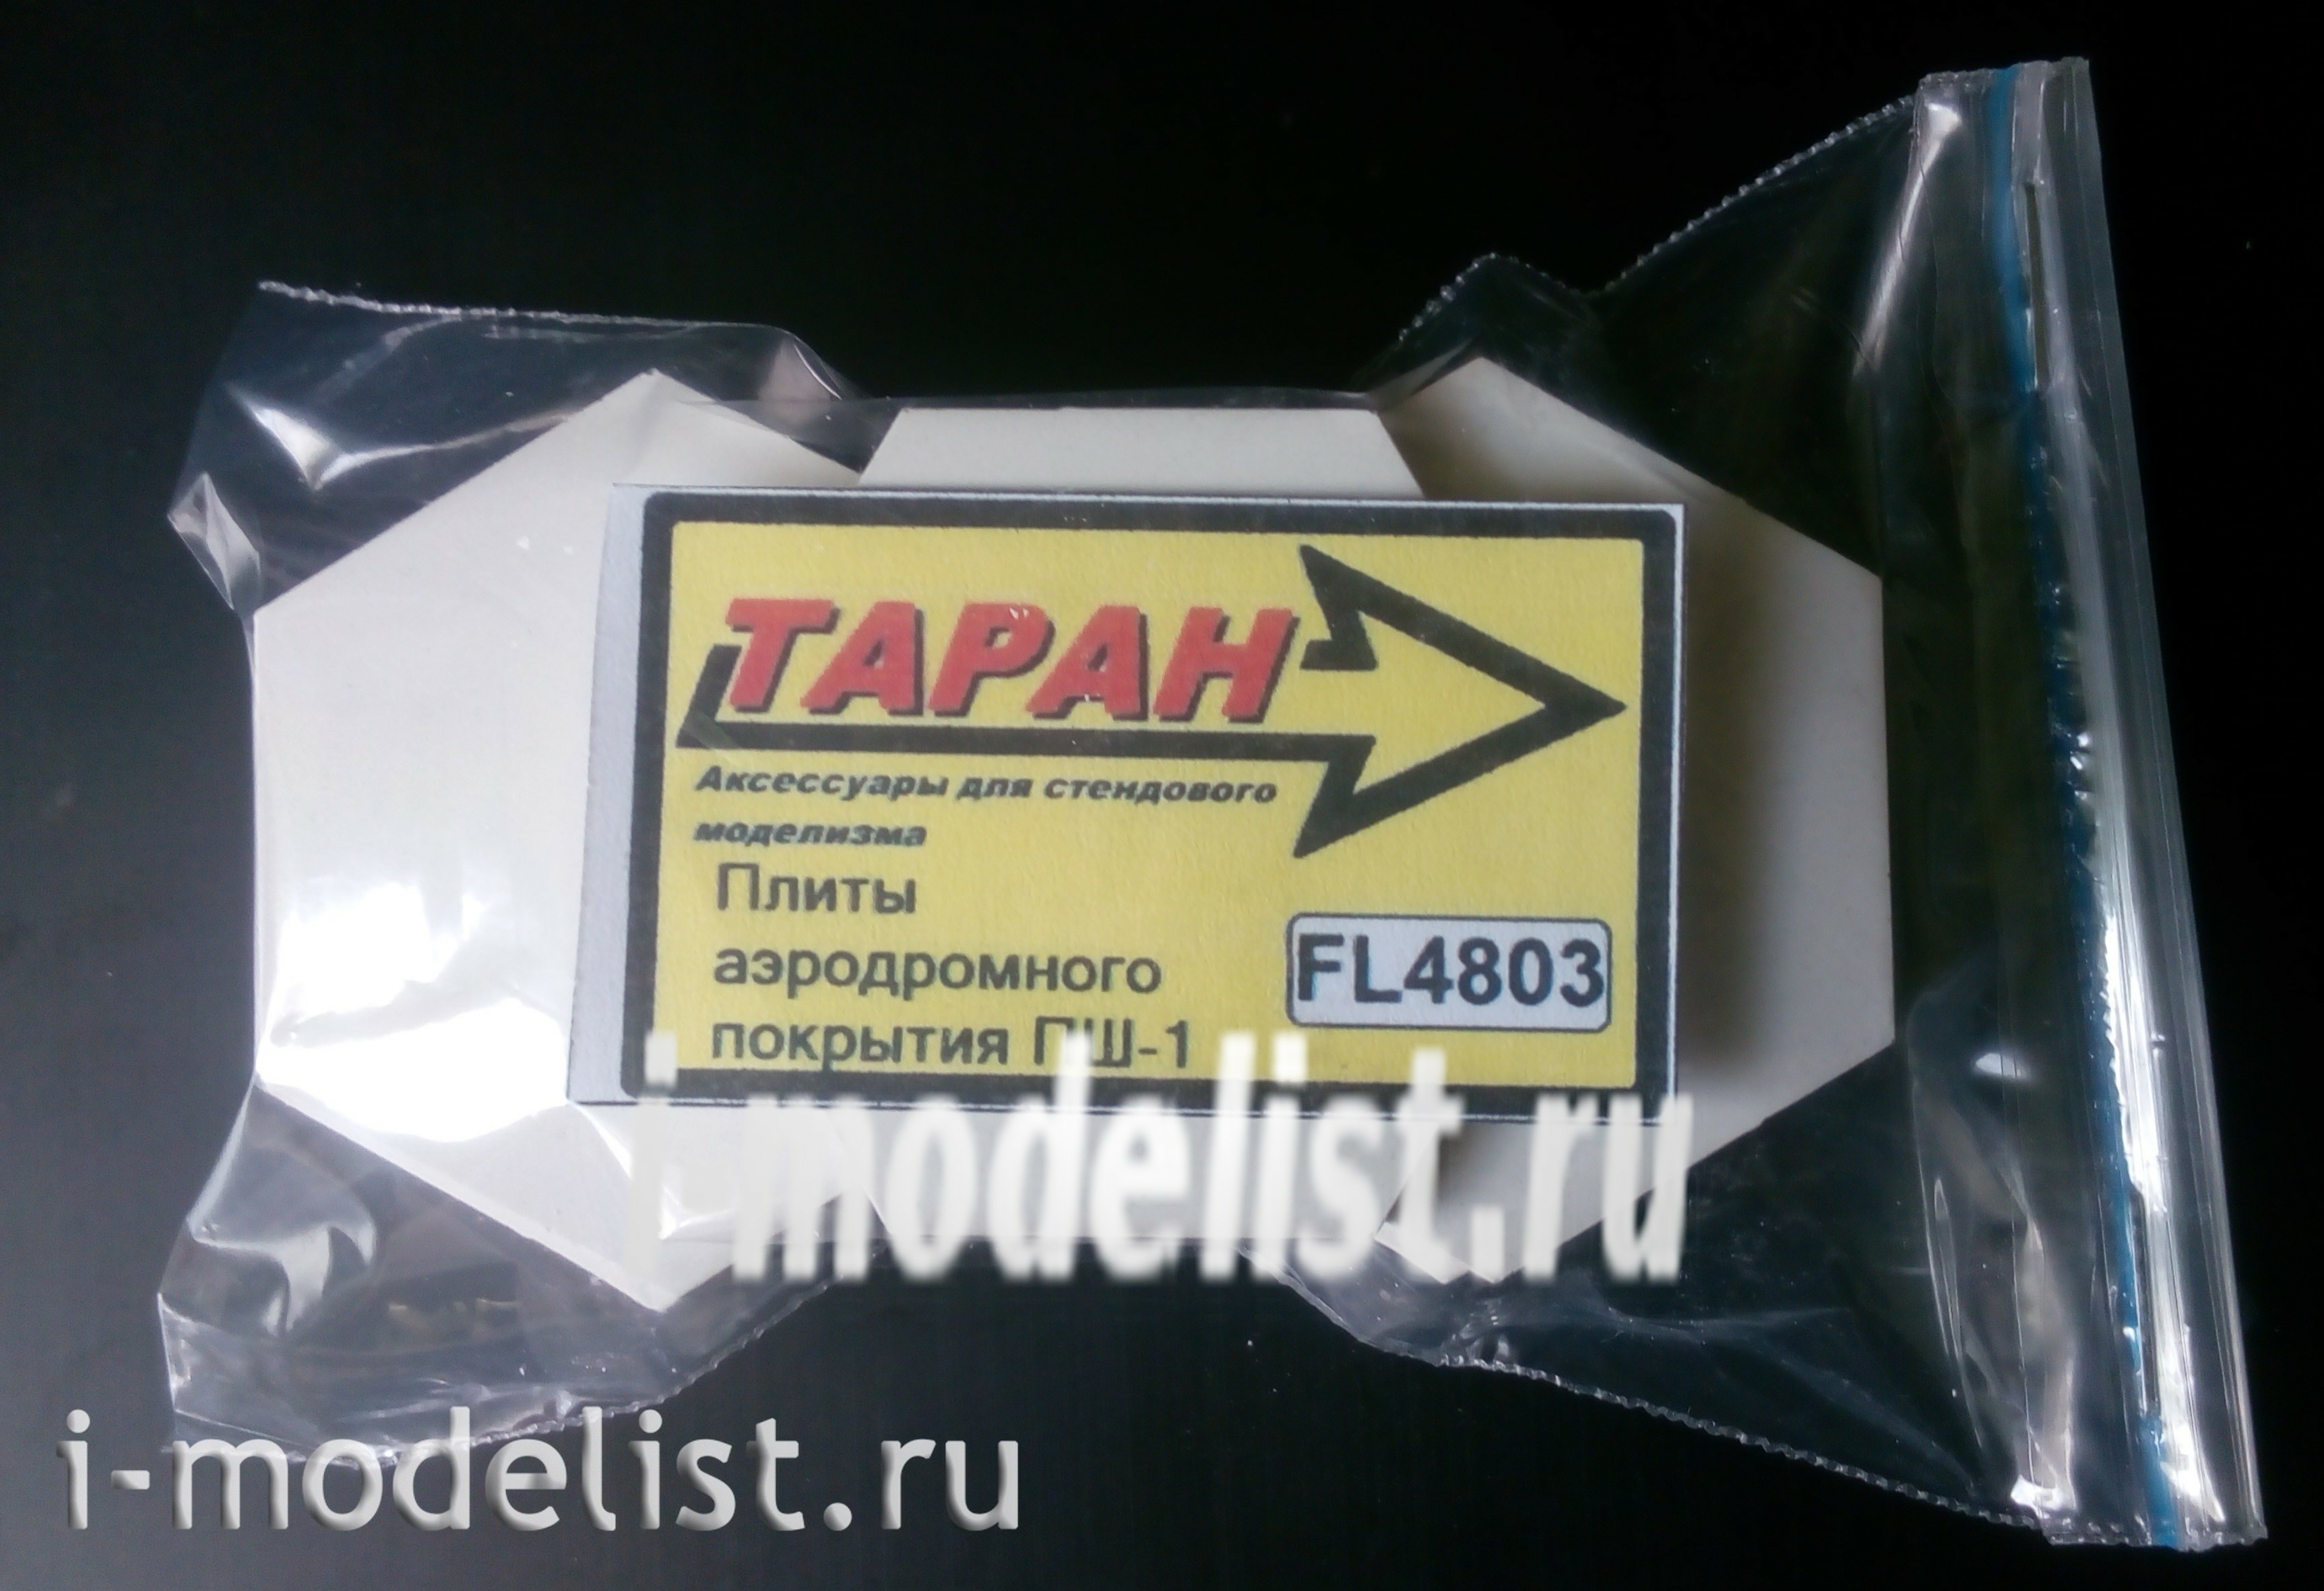 FL4803 Таран 1/48 Плиты аэродромного покрытия (hex)